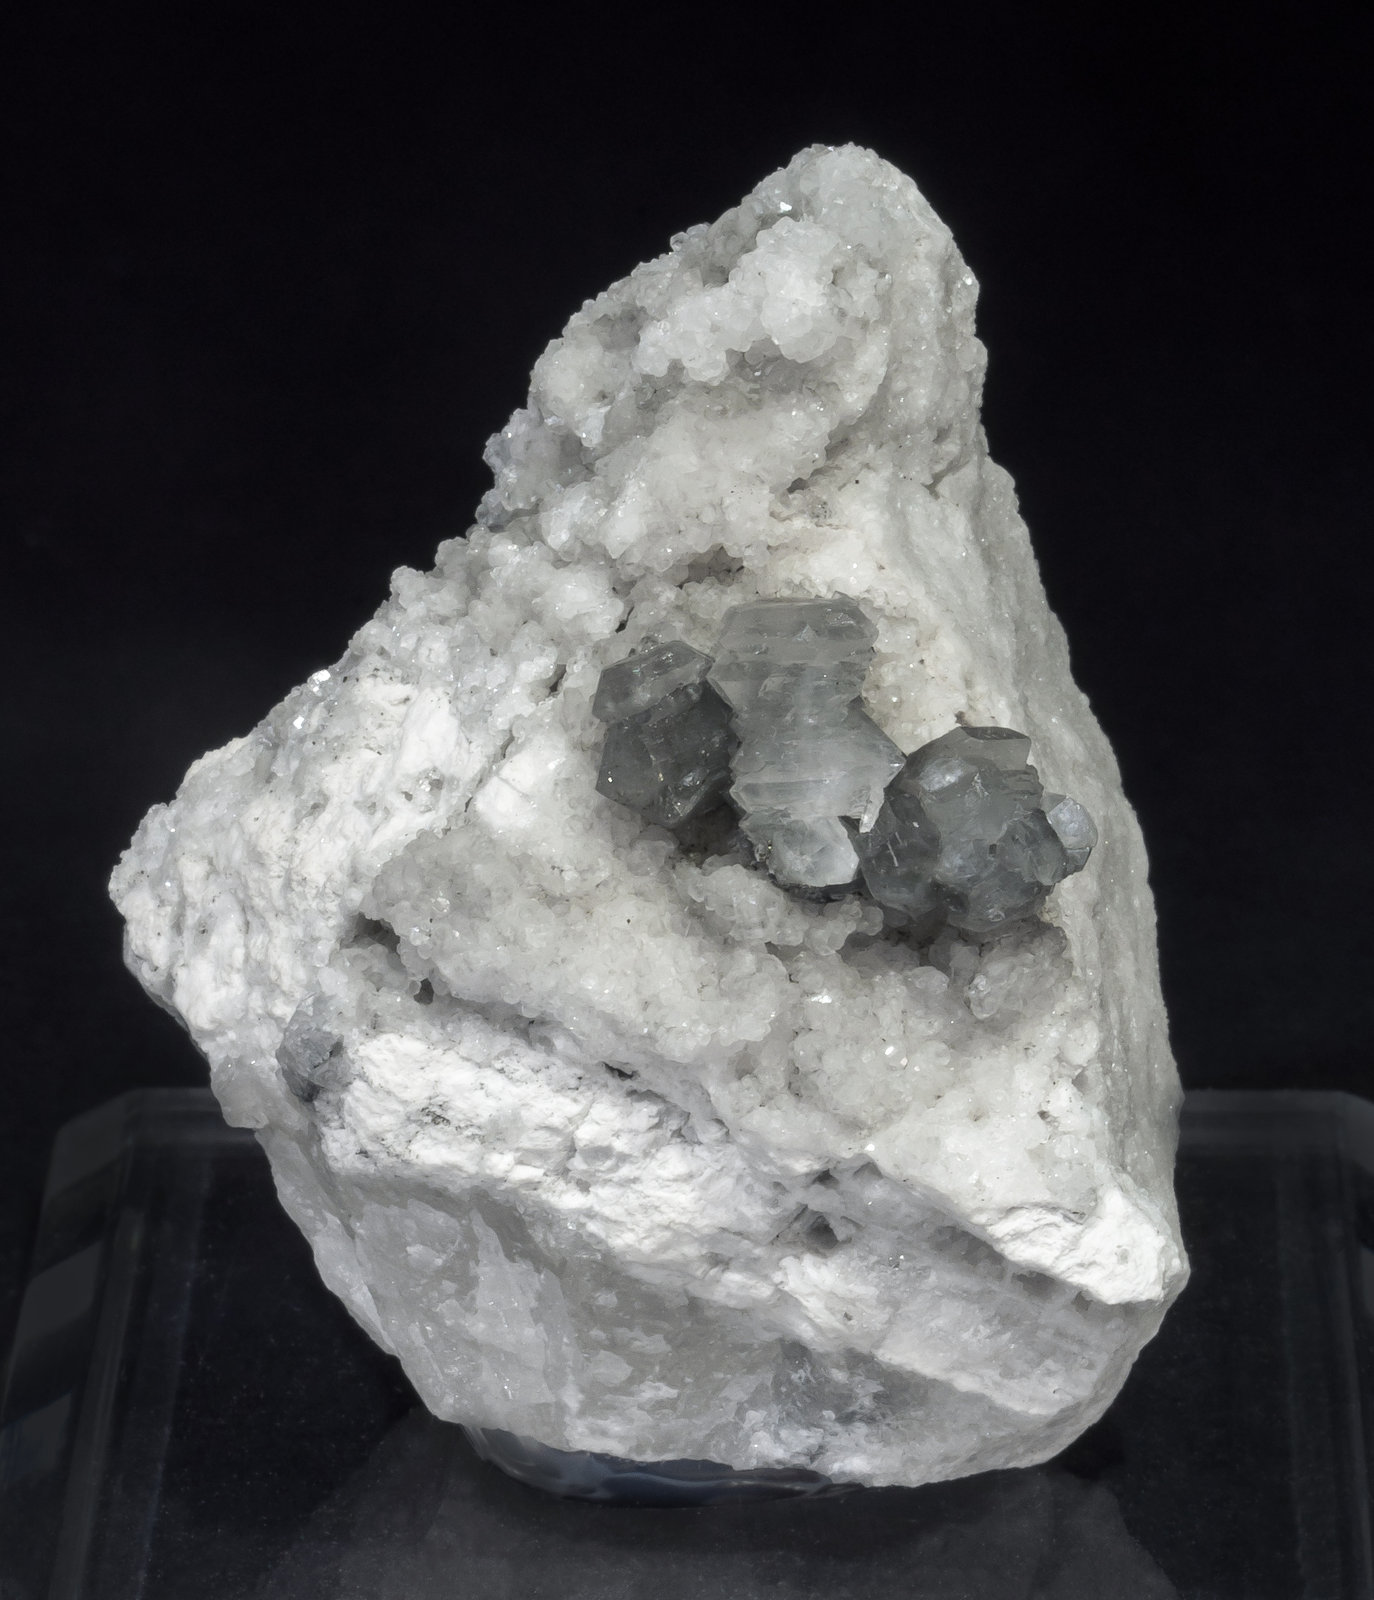 specimens/s_imagesAM1/Strontianite-SB67AM1f.jpg